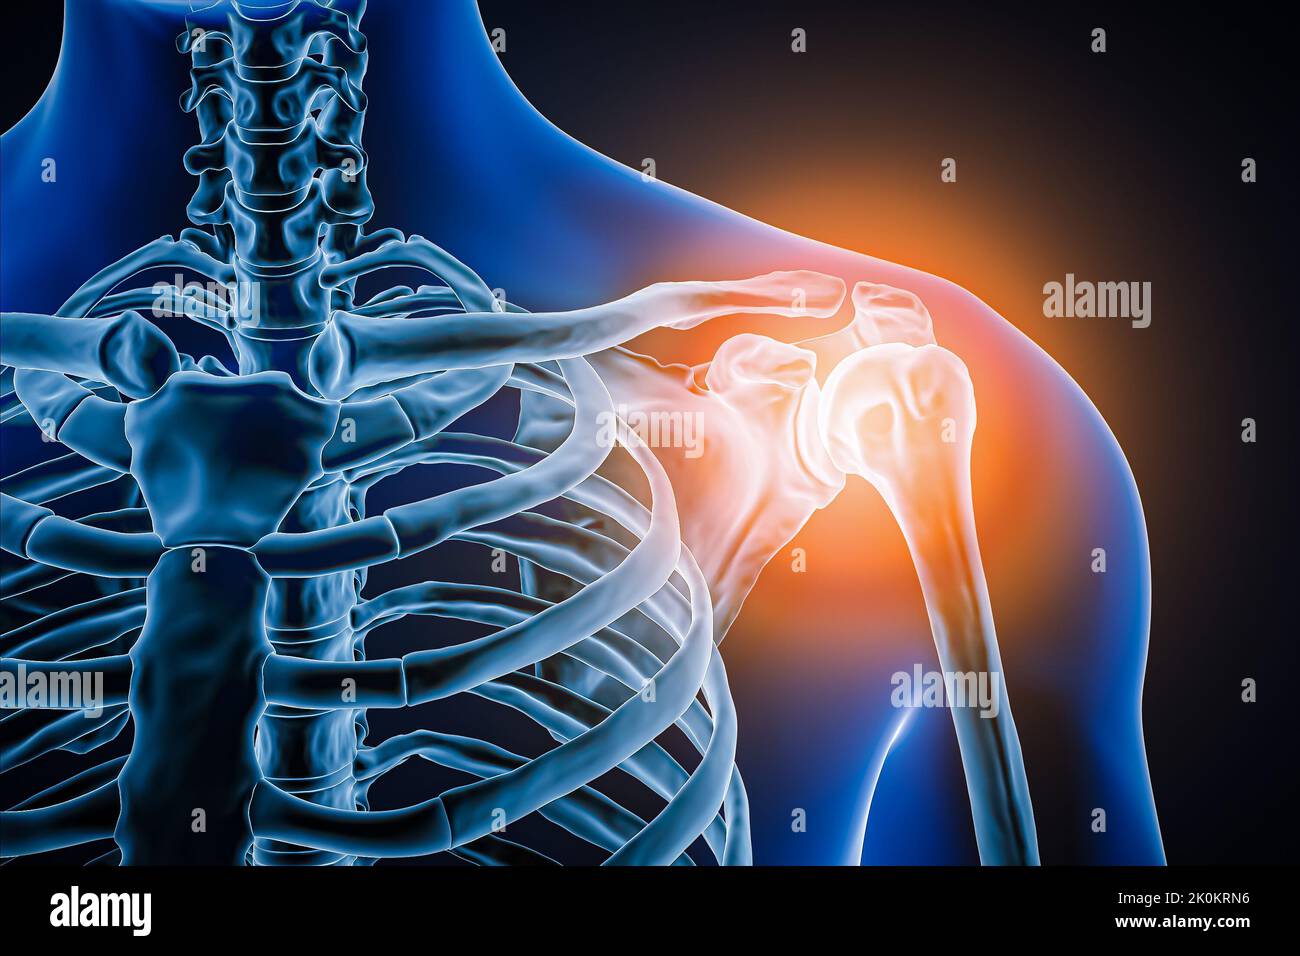 Vista anterior o frontal de la articulación del hombro humano y los huesos con inflamación 3D ilustración. Patología, dolor articular, anatomía, osteología, r Foto de stock